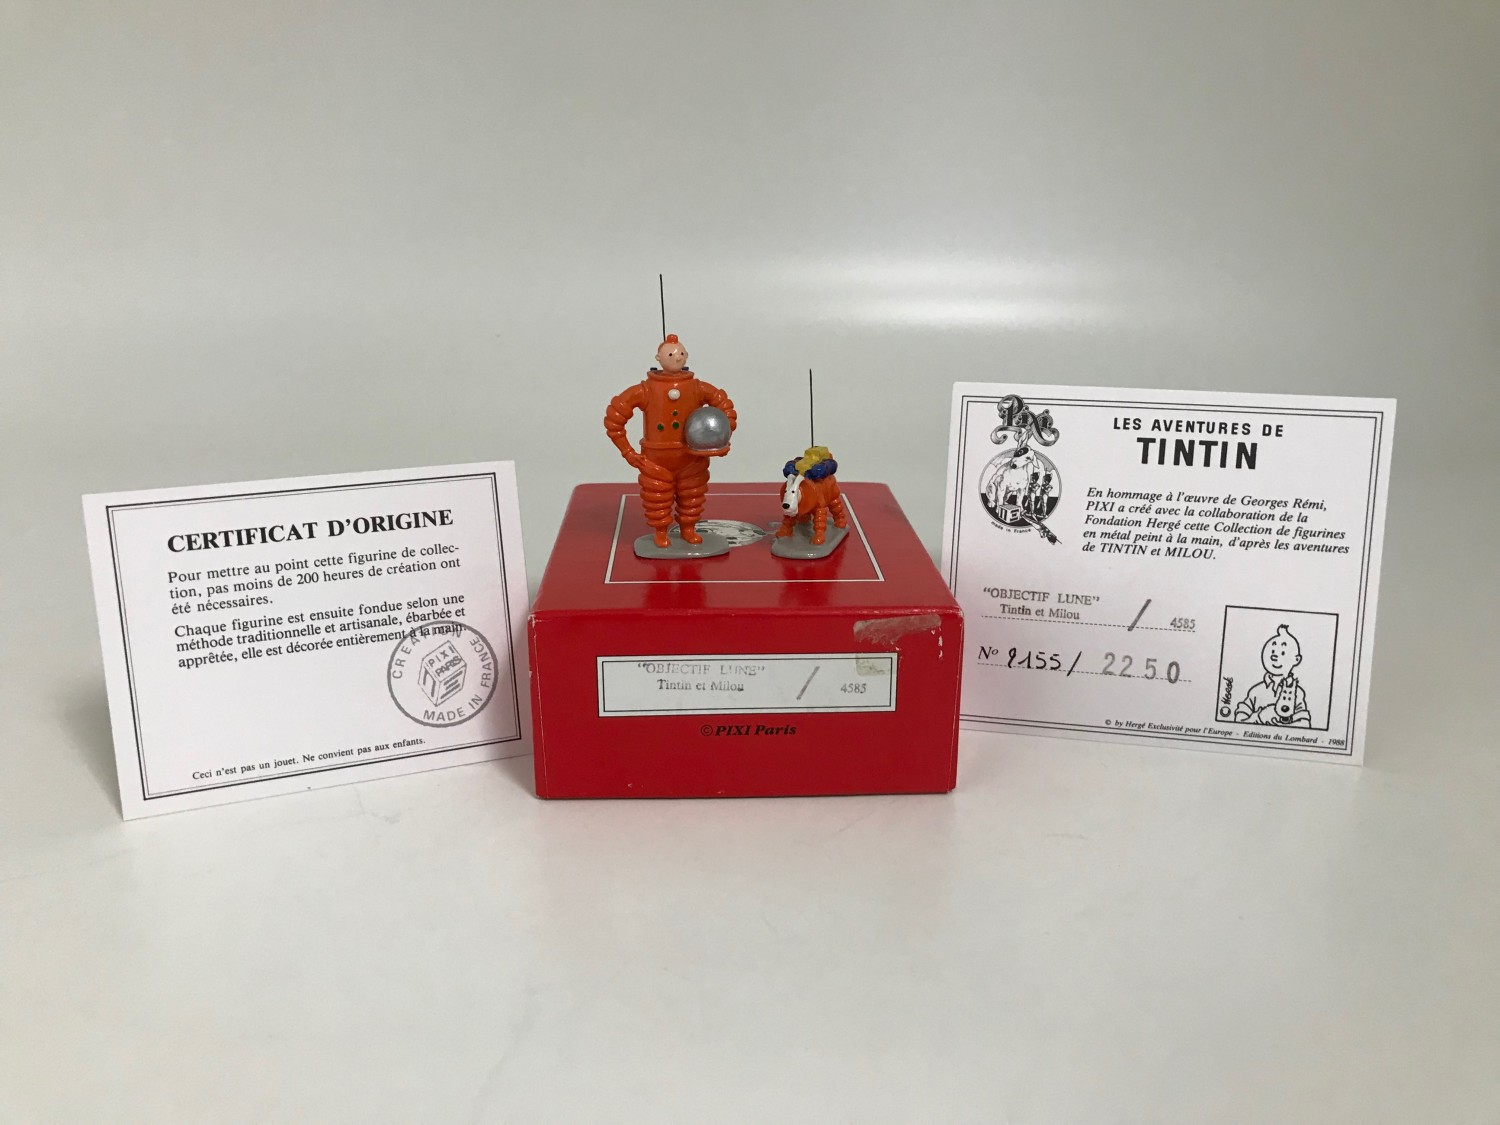 Tintin & Milou "Objectif lune" - Statuette métal